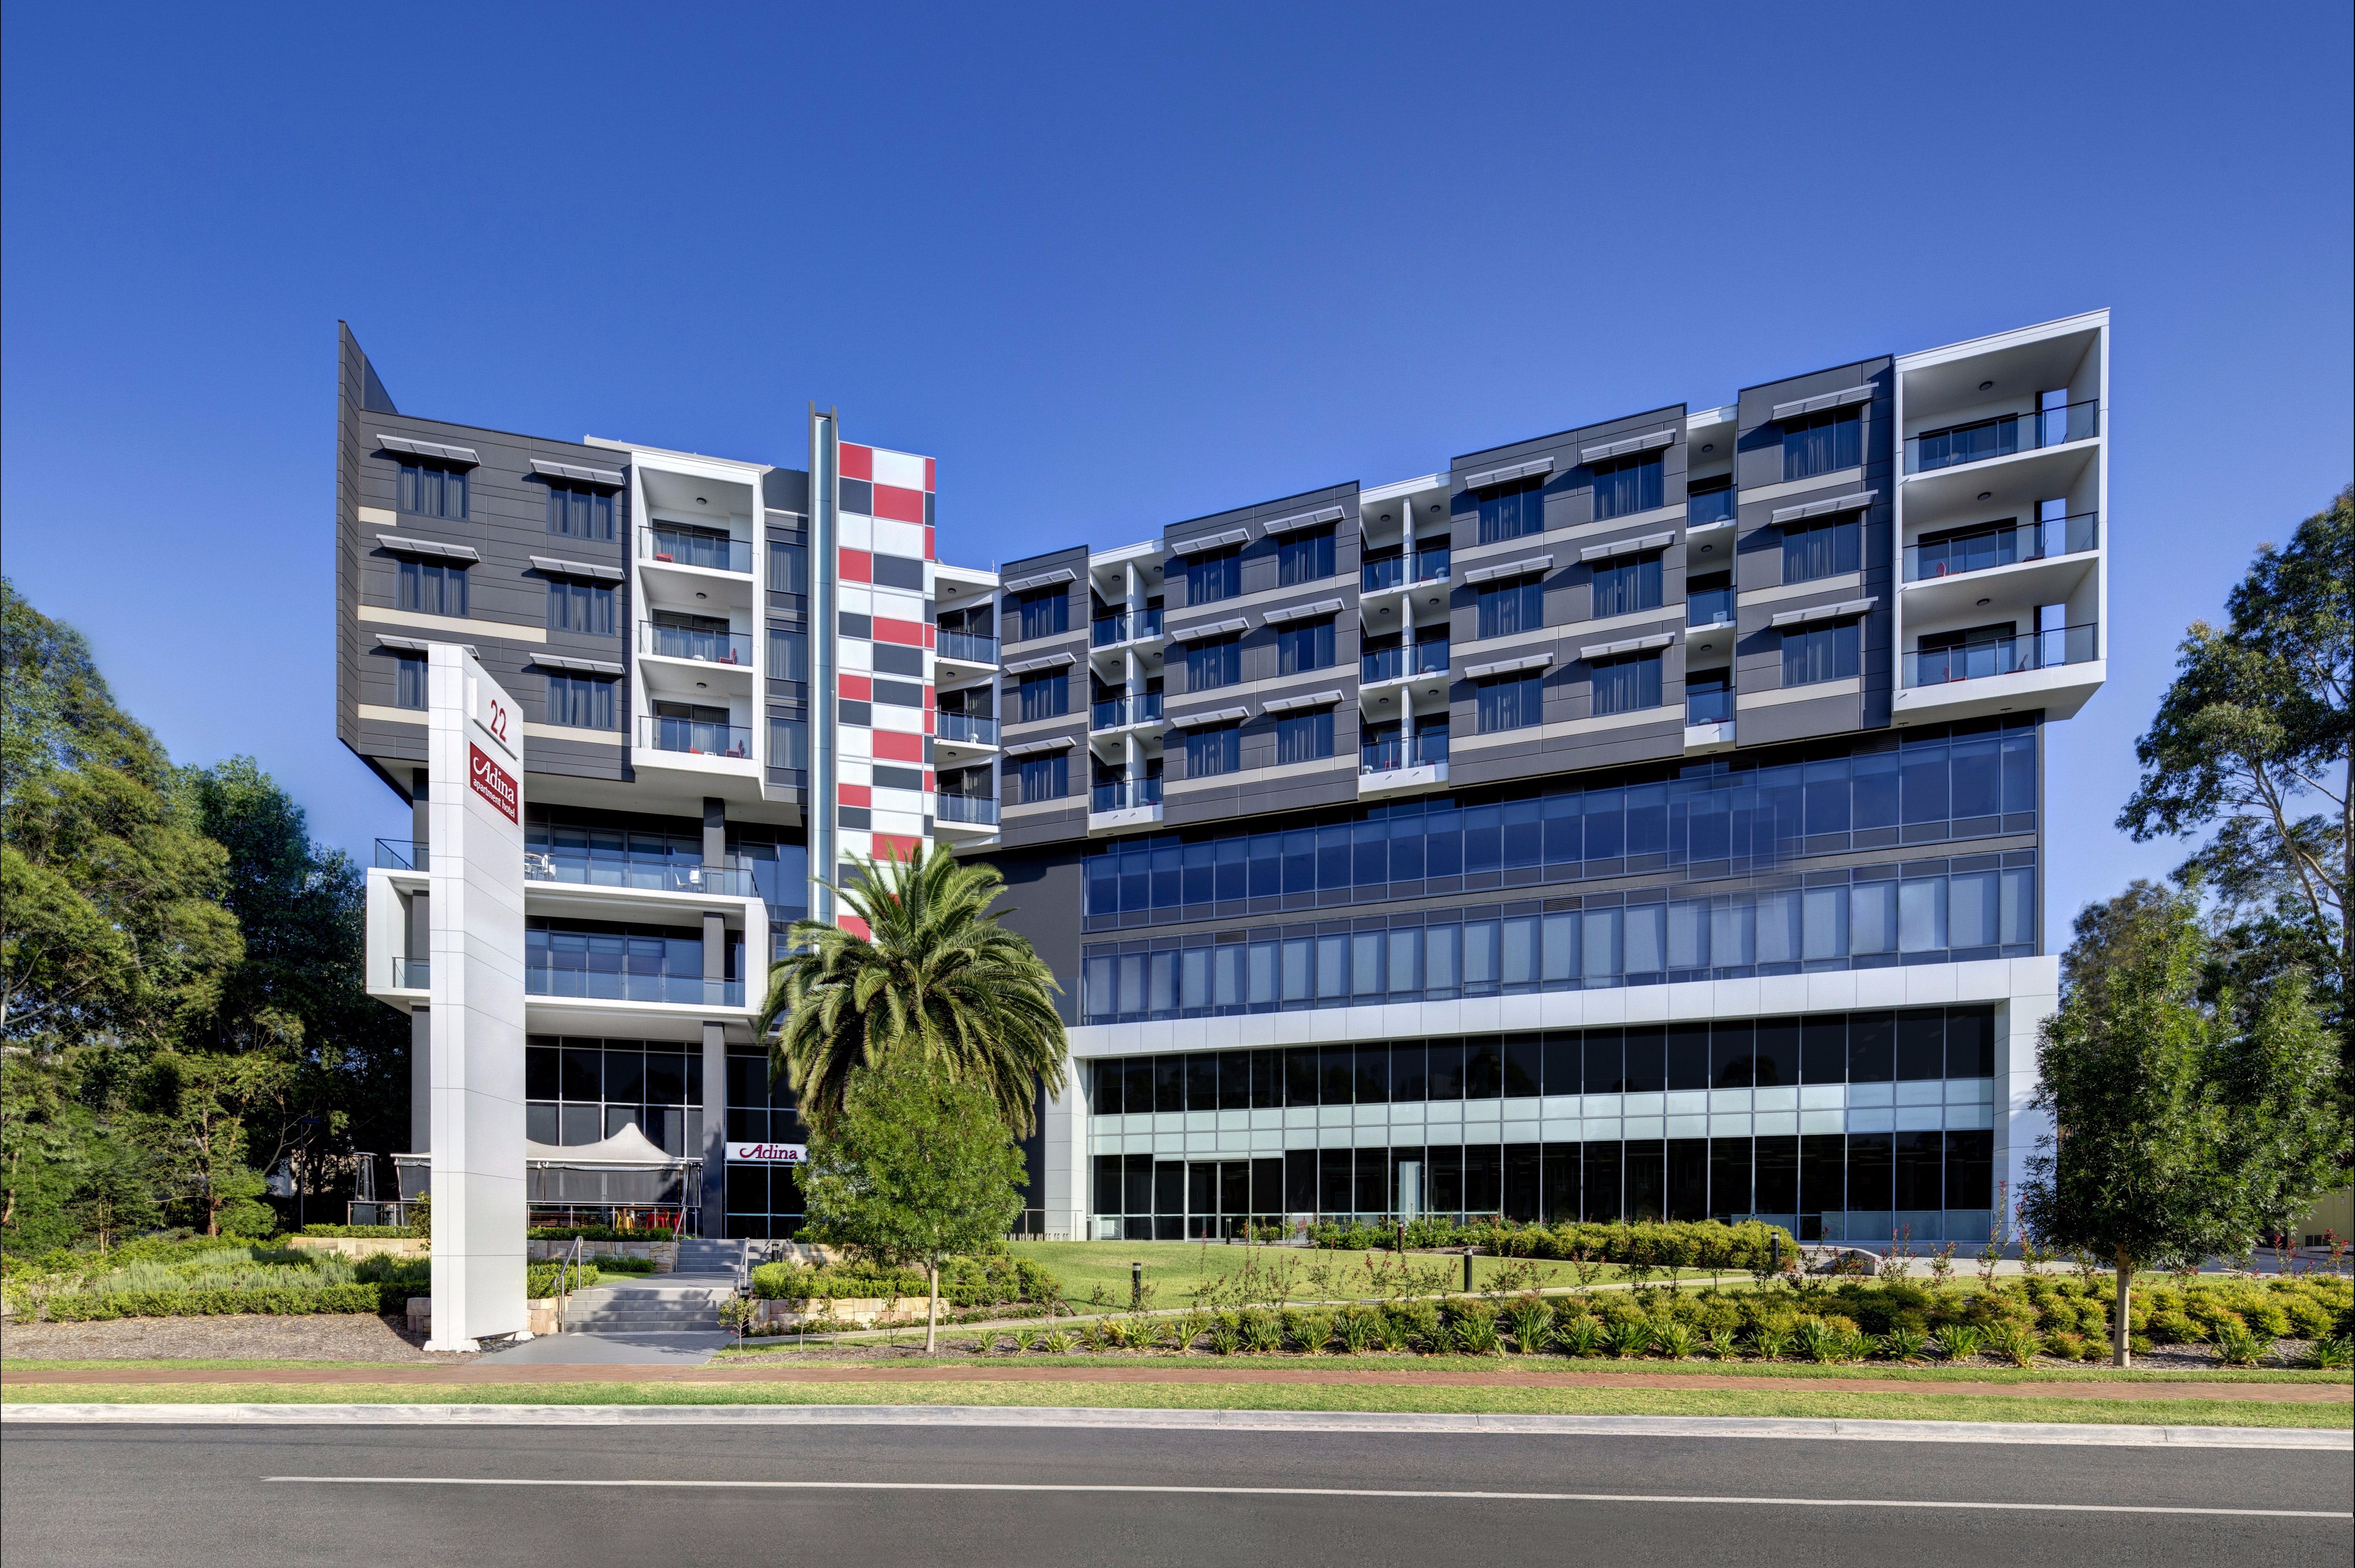 Adina Apartment Hotel Norwest Sydney - Accommodation Sunshine Coast